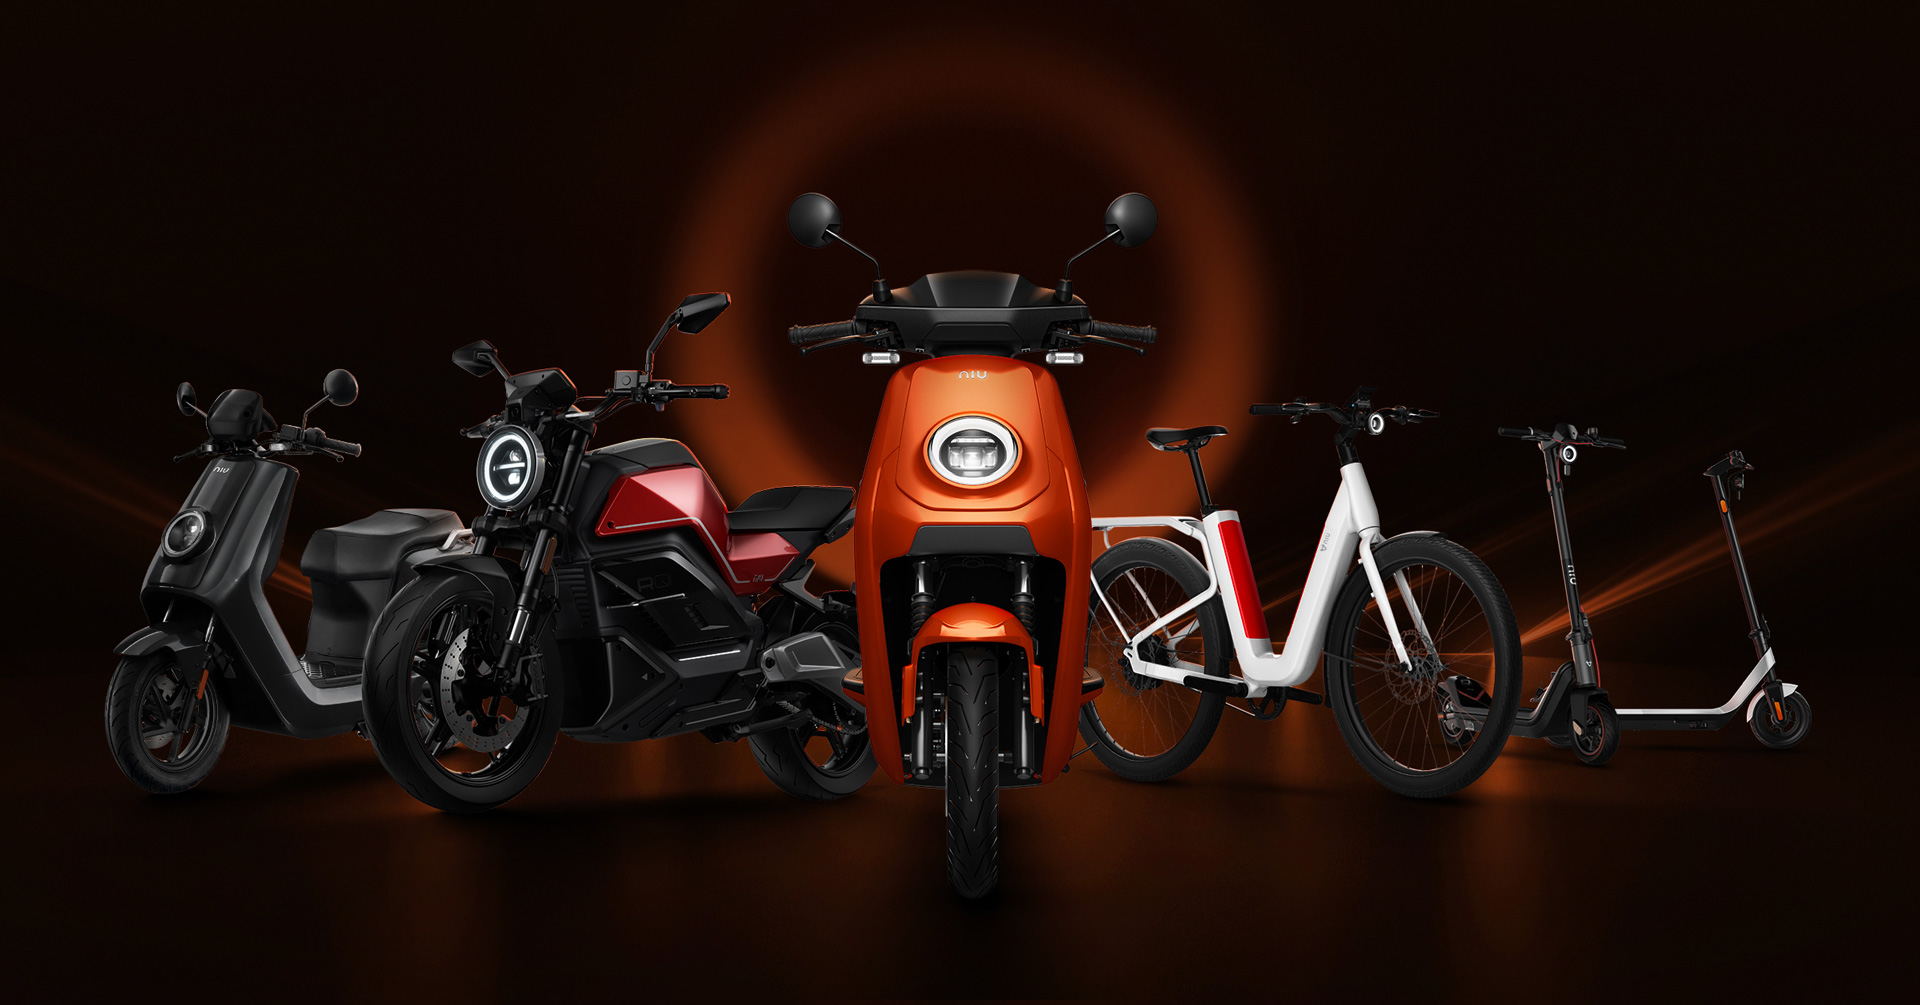 NIU-Produkte auf der EICMA 2021: Elektromotorrad, 125cc-Roller, E-Bike und Tretroller